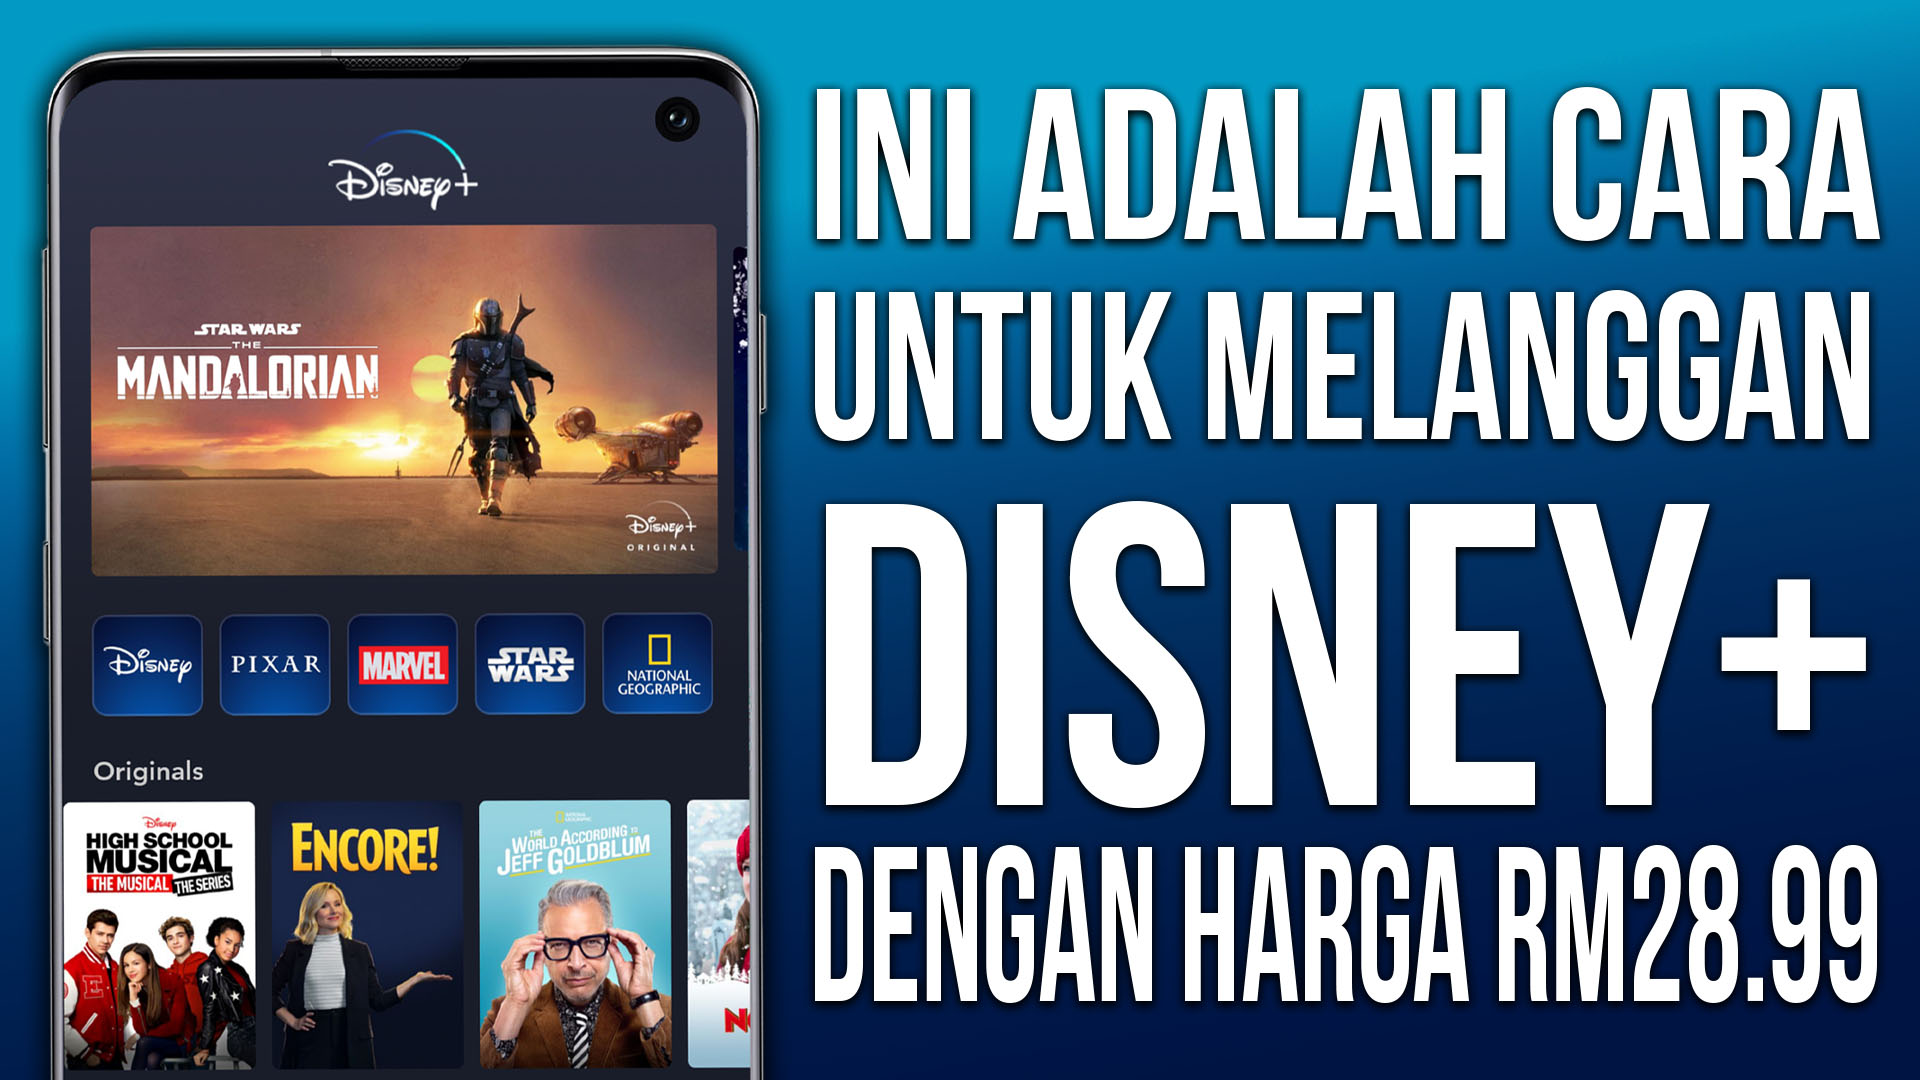 Disney plus malaysia price